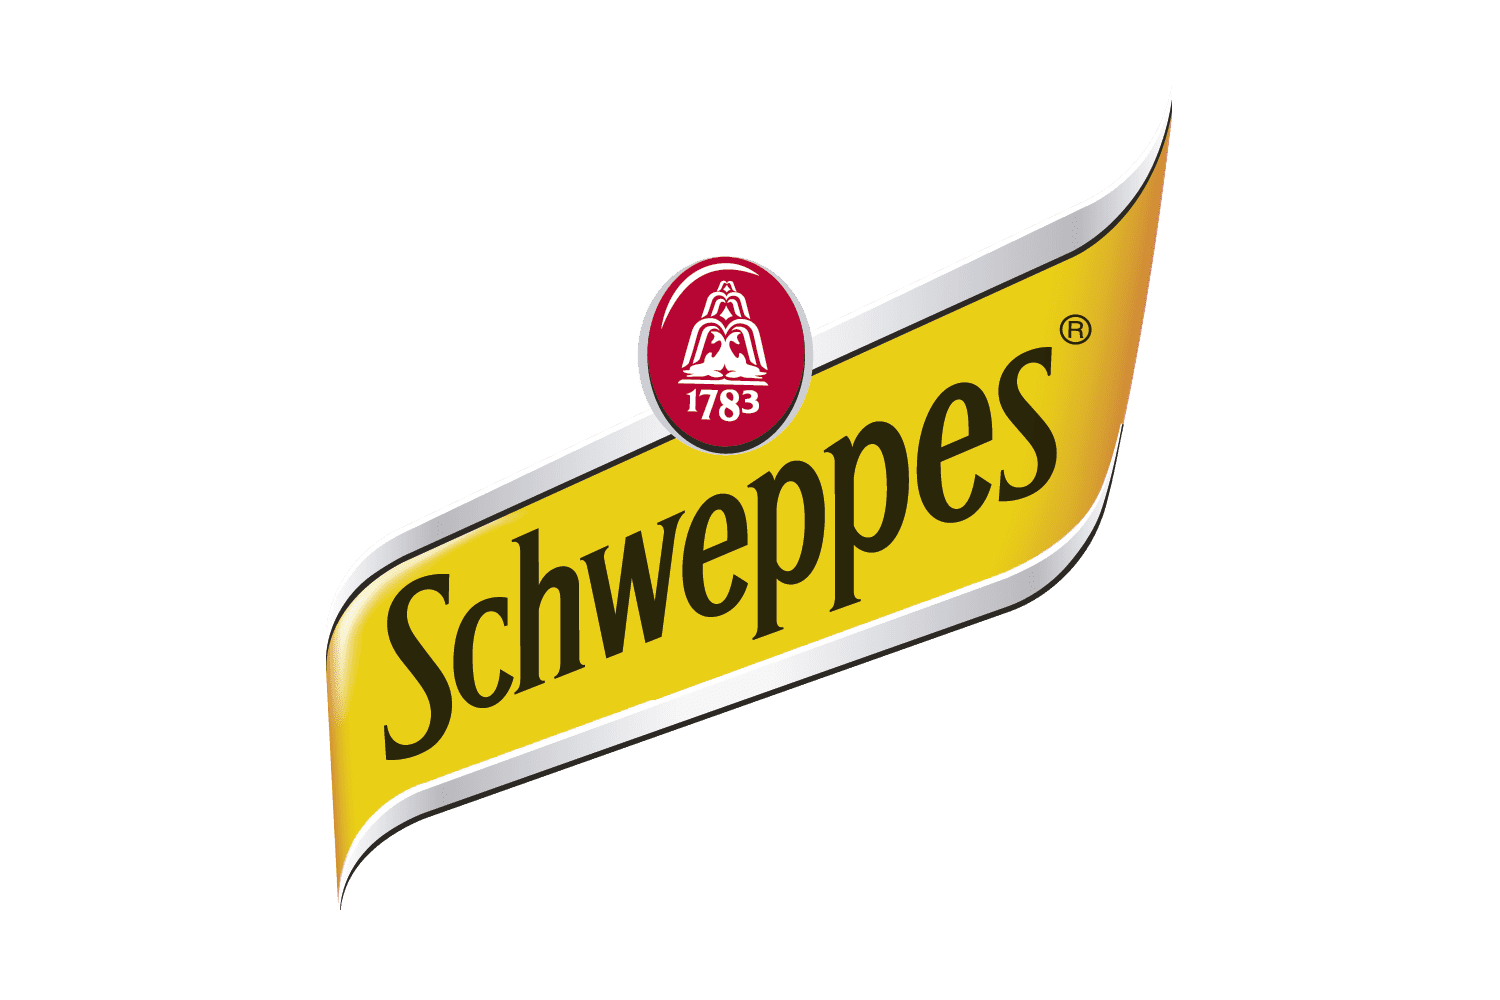 schweppes logo history